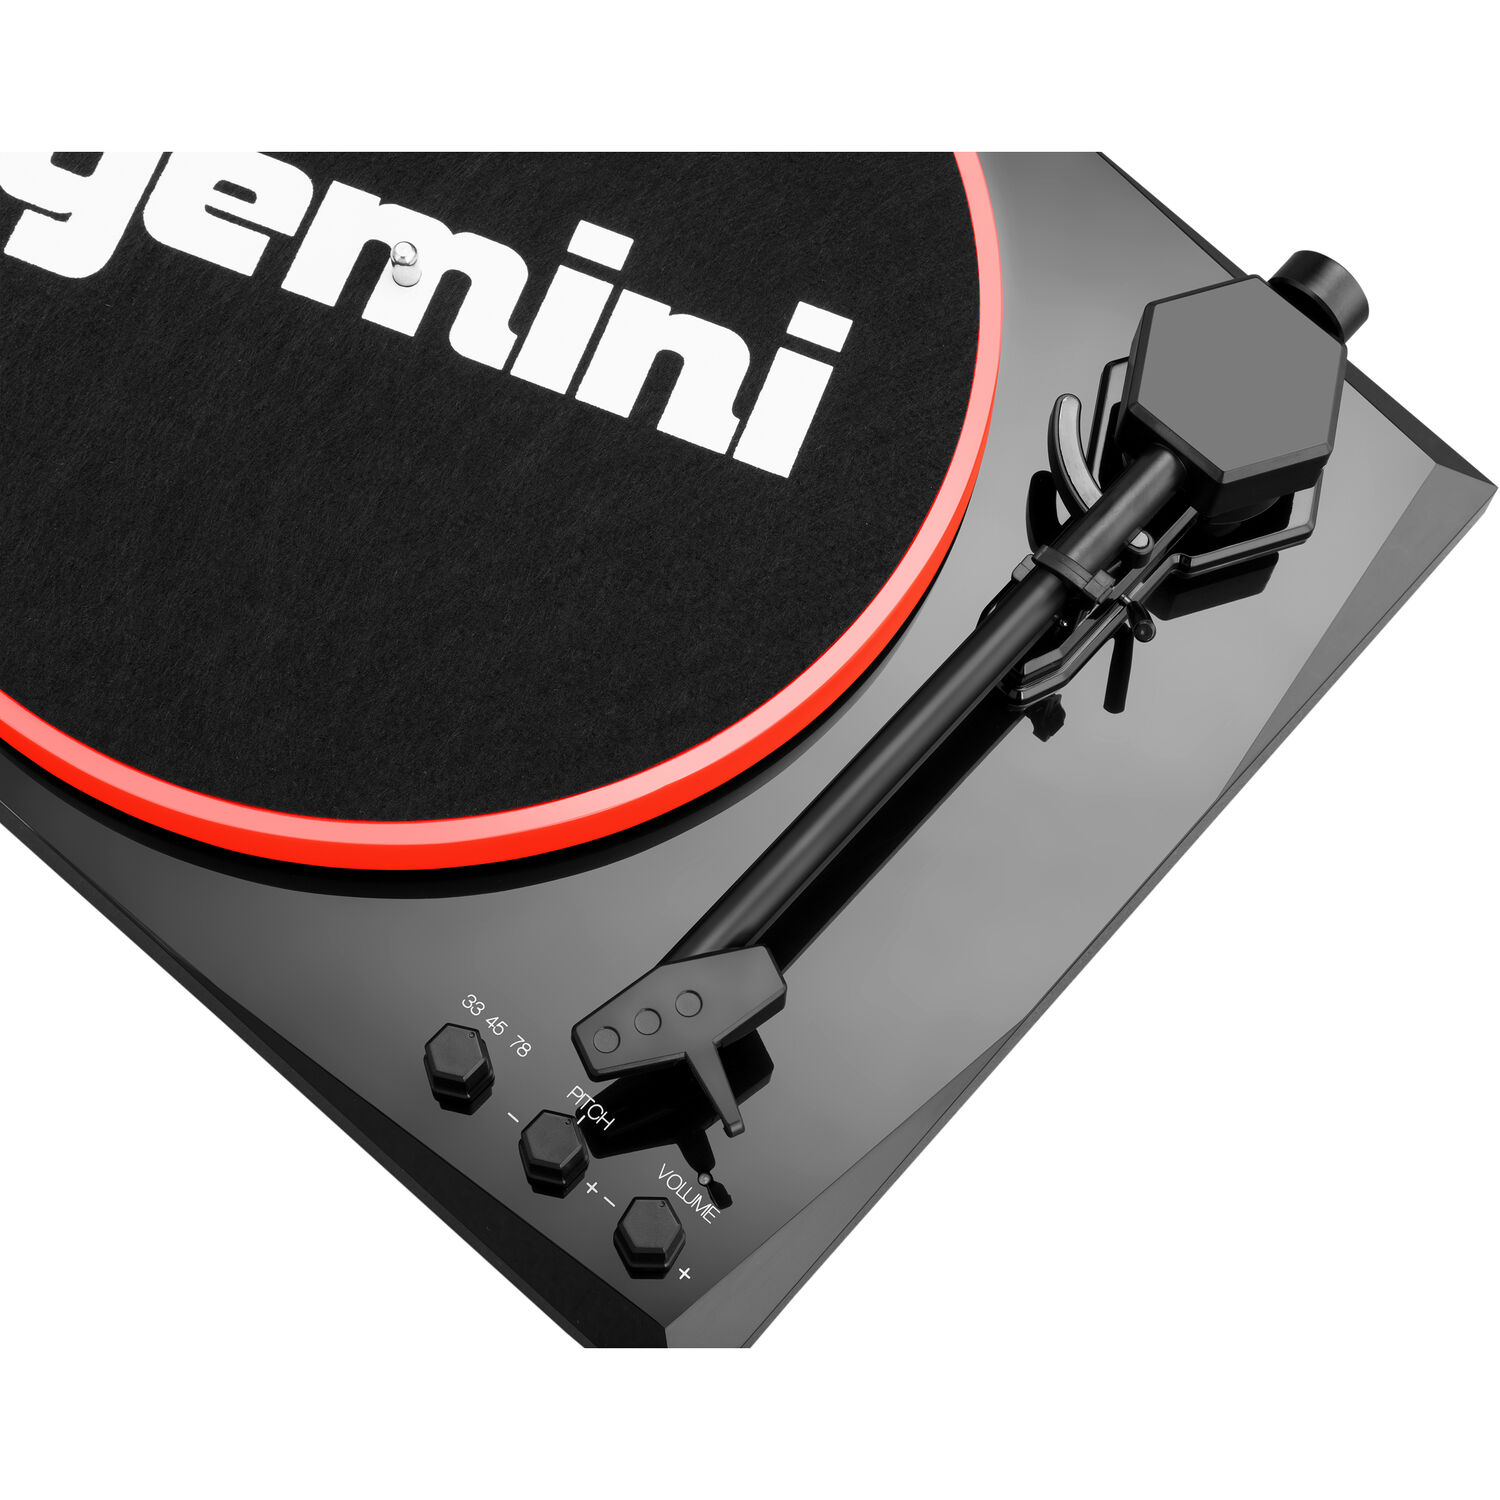 Проигрыватель виниловых дисков Gemini TT-900BR